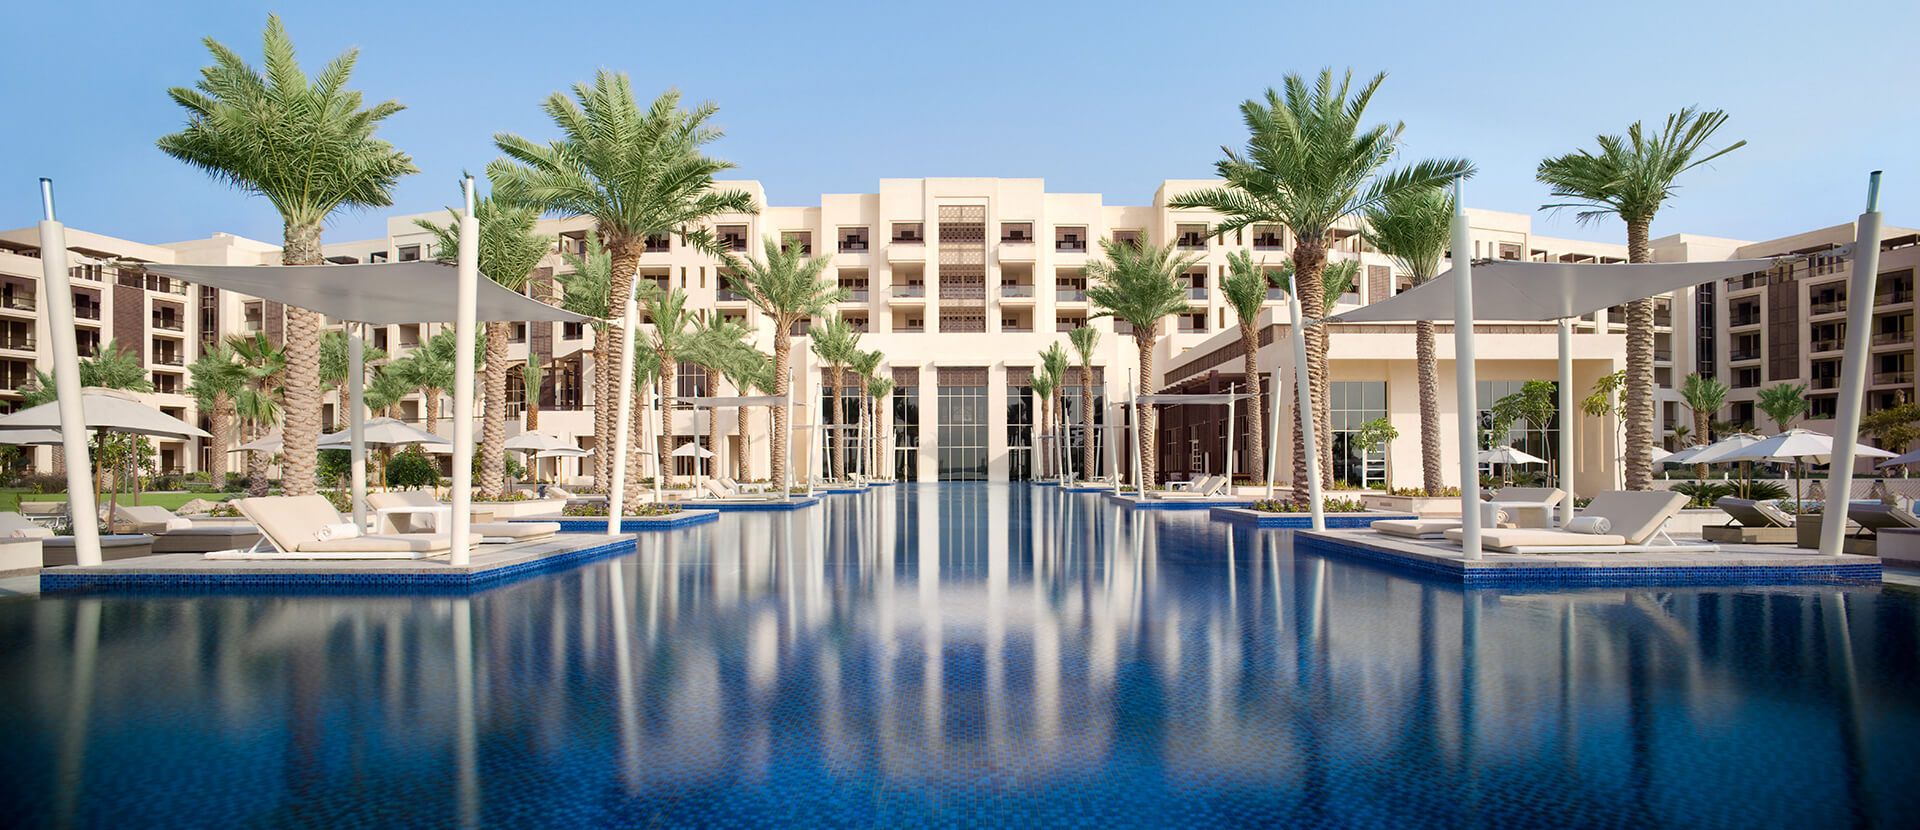 Park Hyatt Abu Dhabi Hotel and Villas Exterior